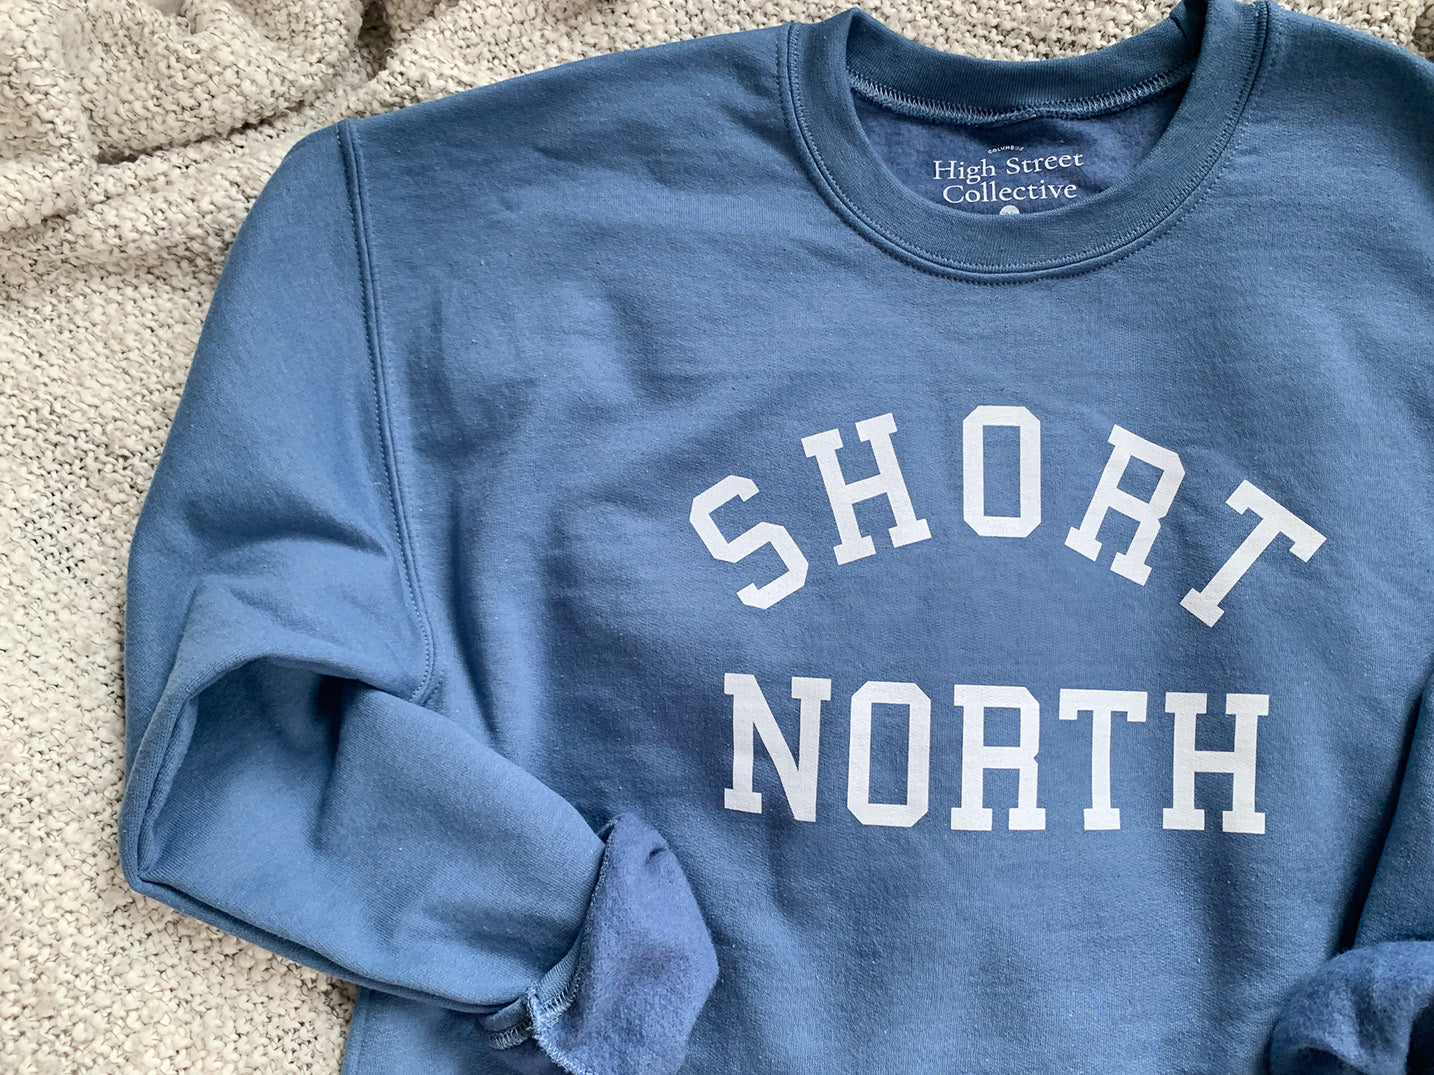 Indigo blue Short North crewneck sweatshirt.